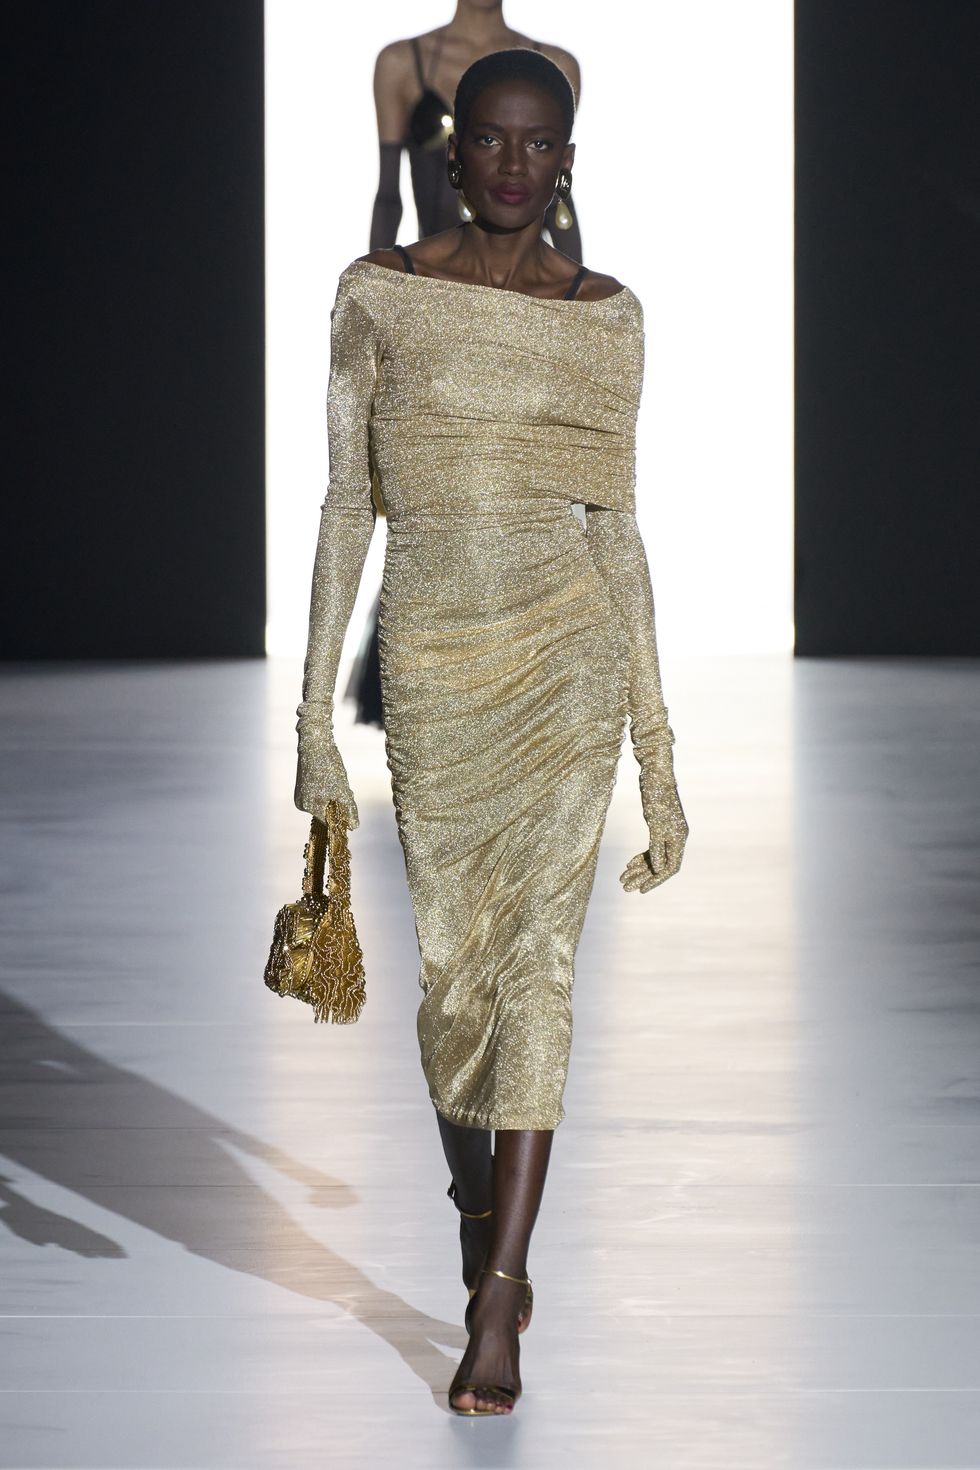 bolso dorado tendencia moda mujer invierno